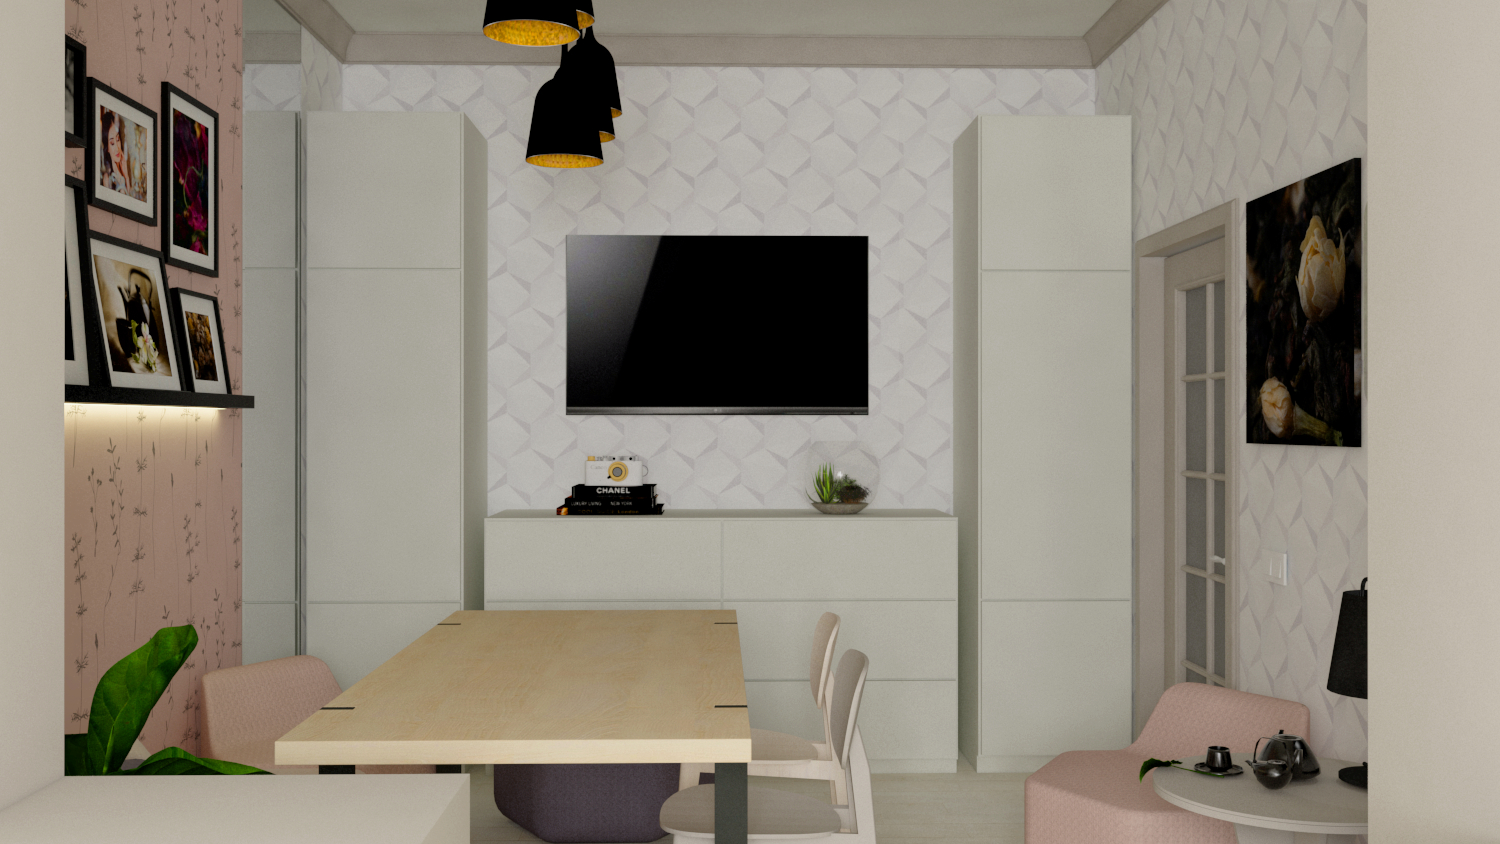 Mutfak-yemek odası in SketchUp vray 3.0 resim